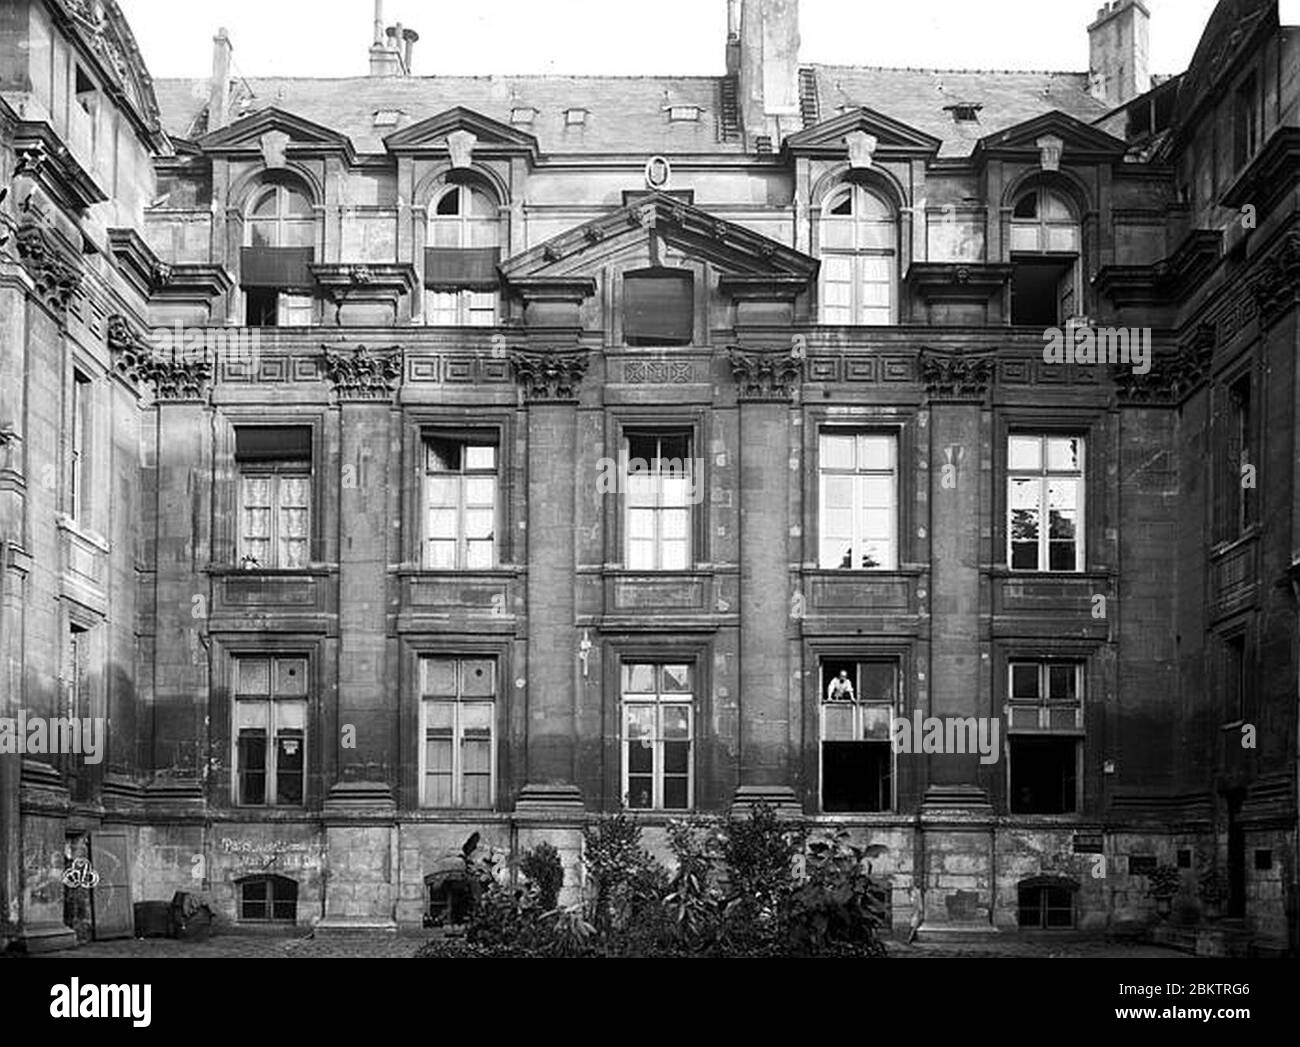 Hôtel Lamoignon - Façade sur cour - Paris - Médiathèque de l'architecture et du patrimoine - Stock Photo